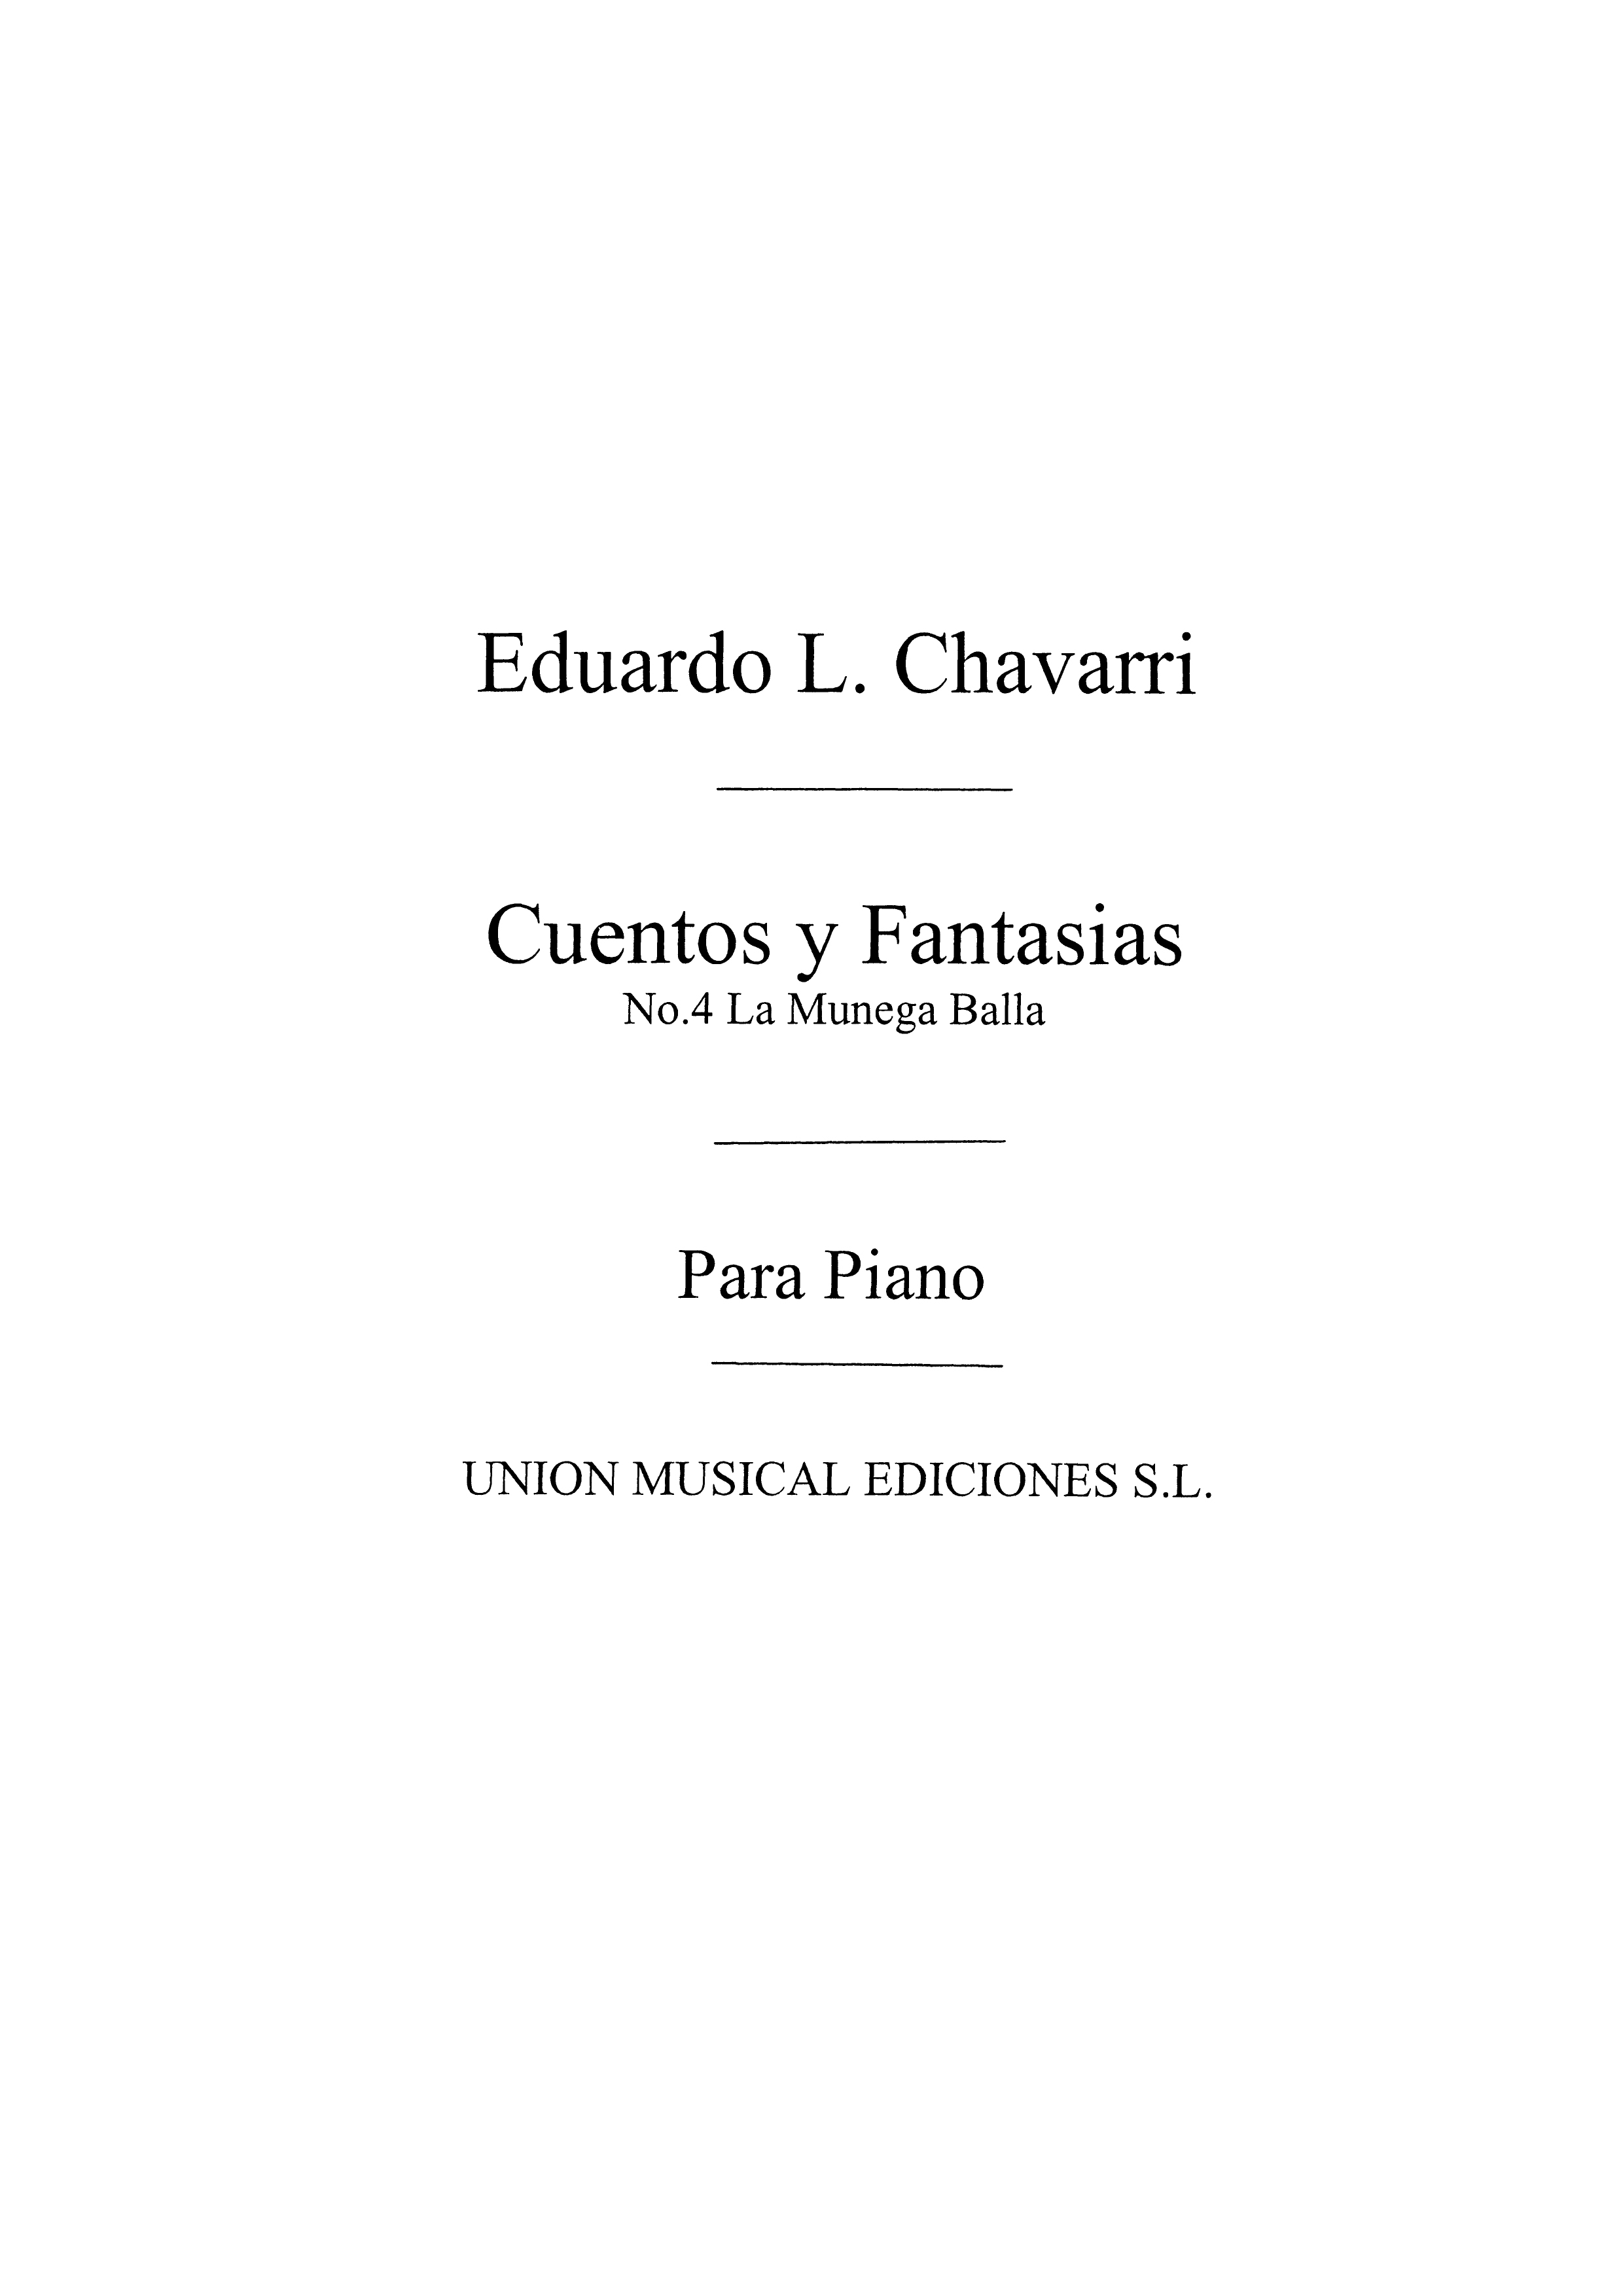 Eduardo Lopez-Chavarri: Cuentos Y Fantasias Num 4 Muneca Baila Vals: Piano: